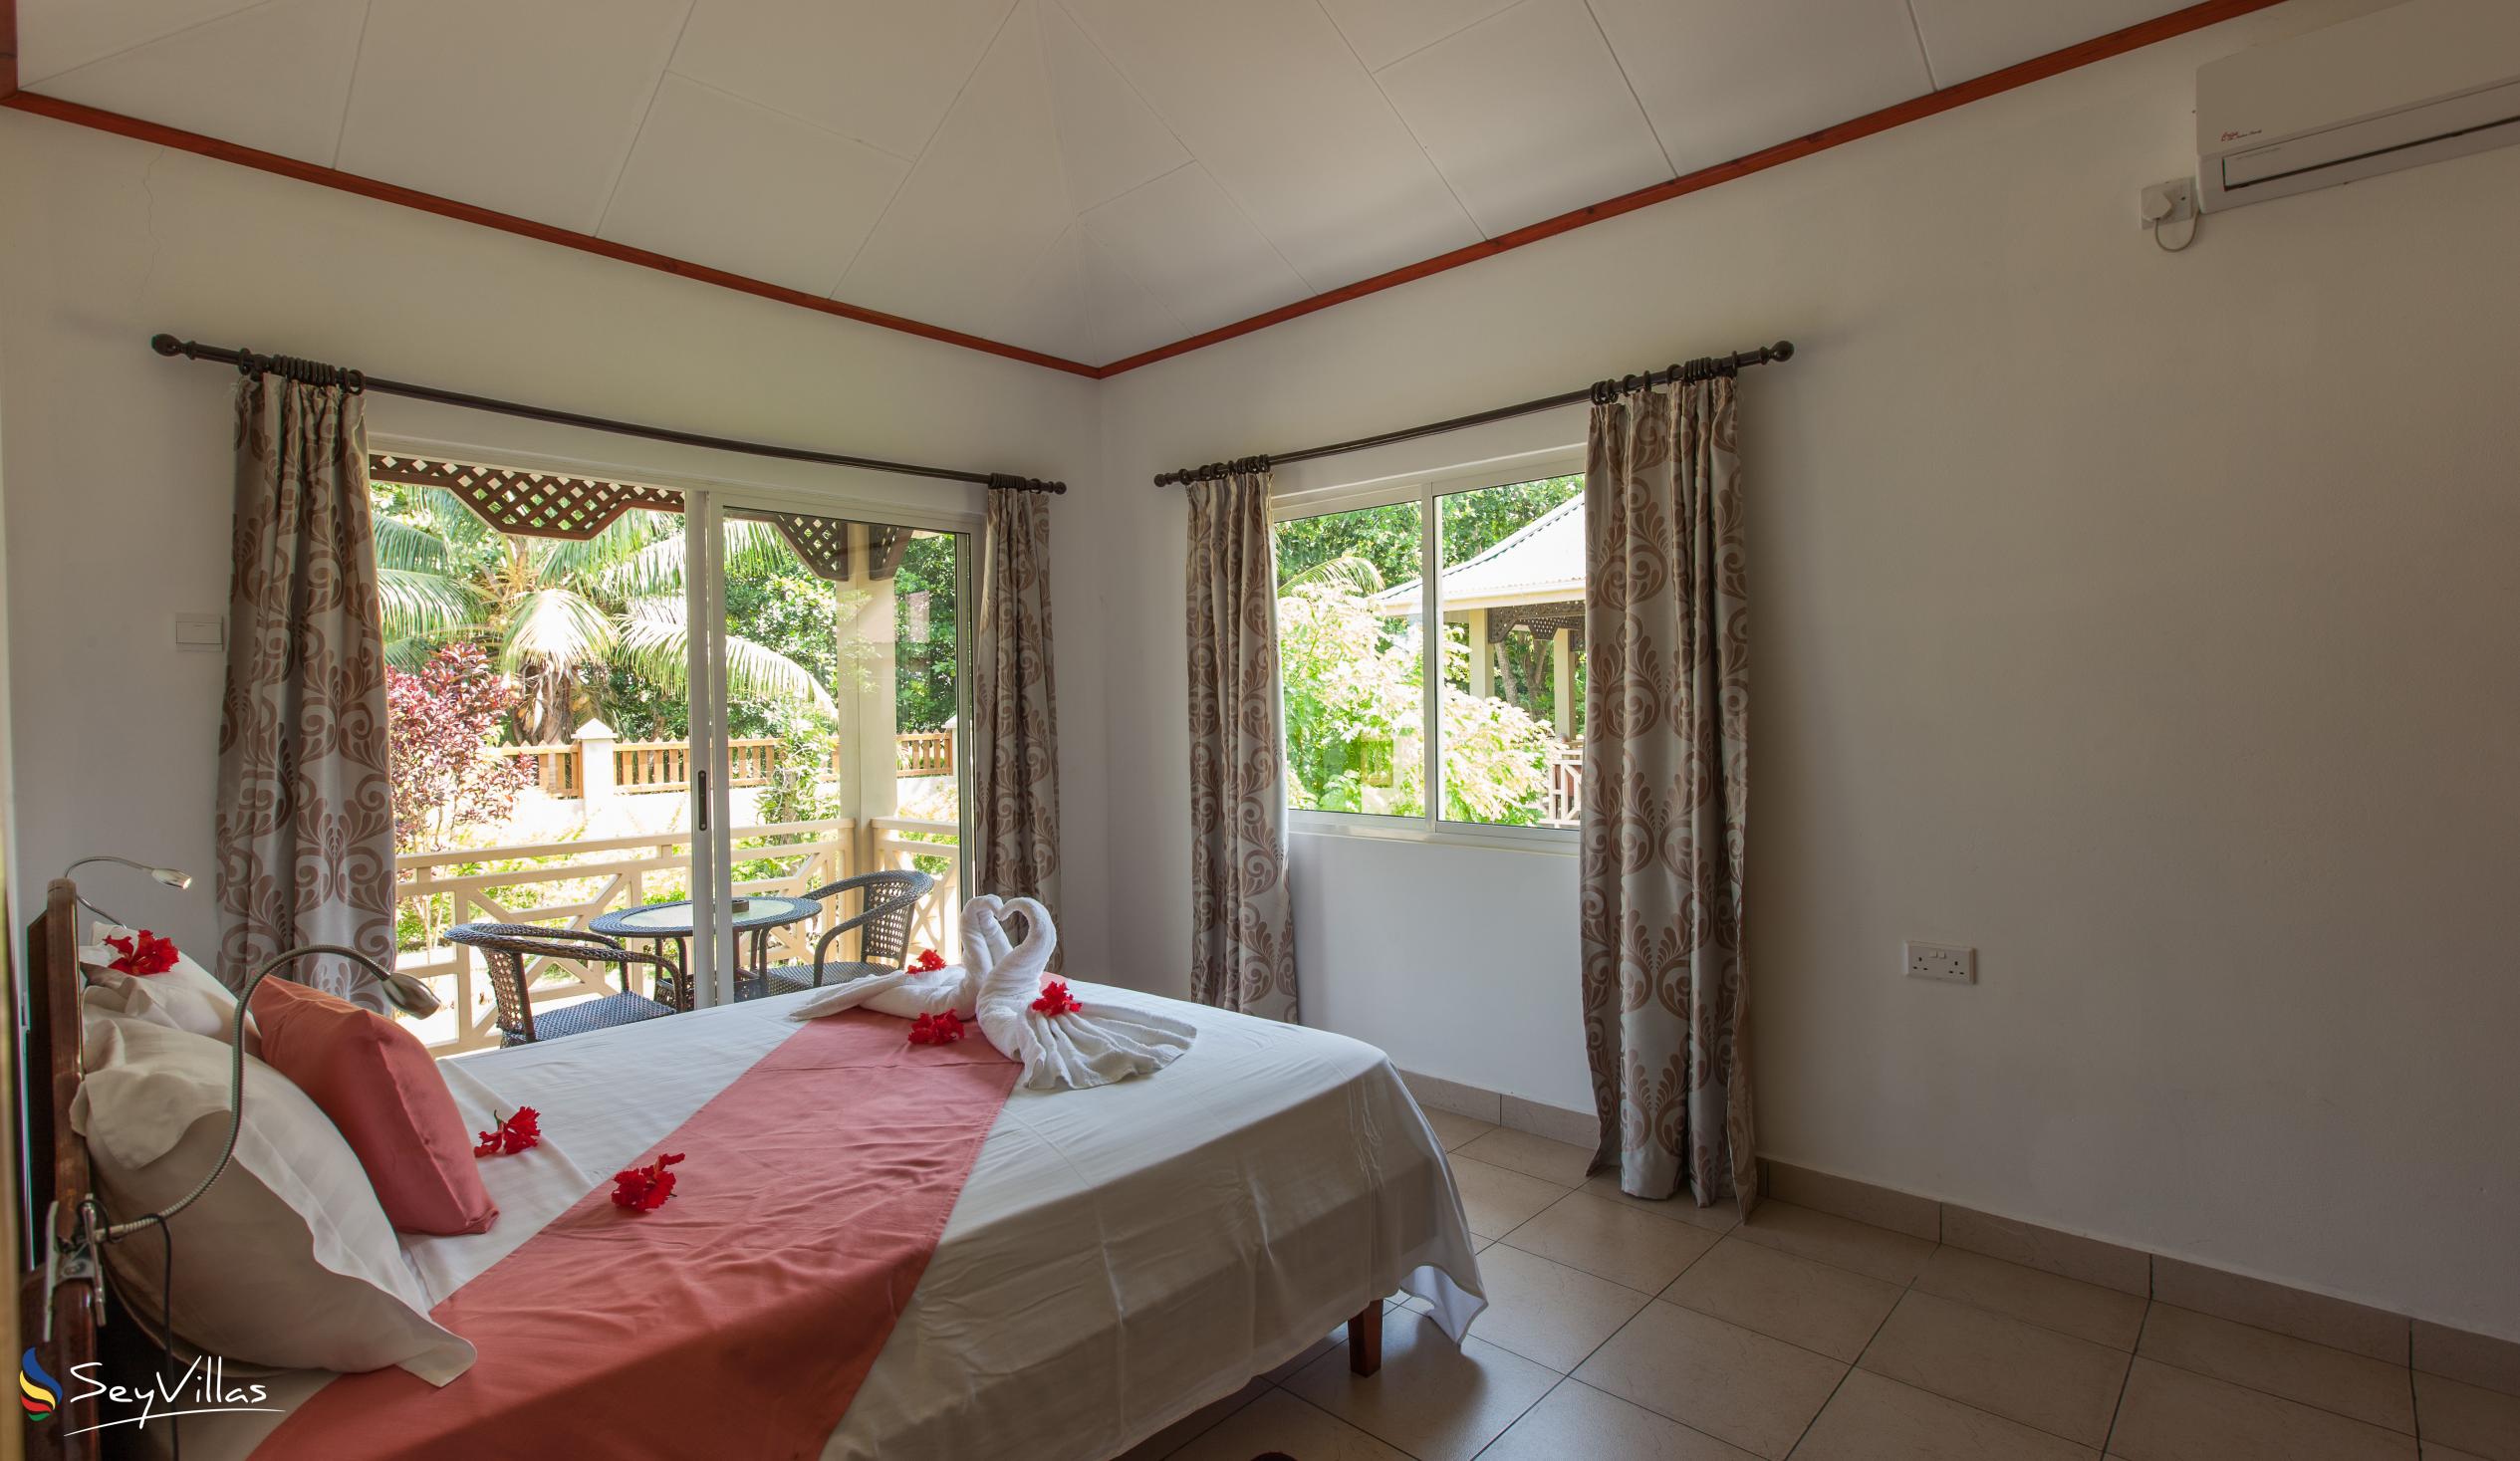 Foto 46: Hostellerie La Digue - Chalet mit 2 Schlafzimmern - La Digue (Seychellen)